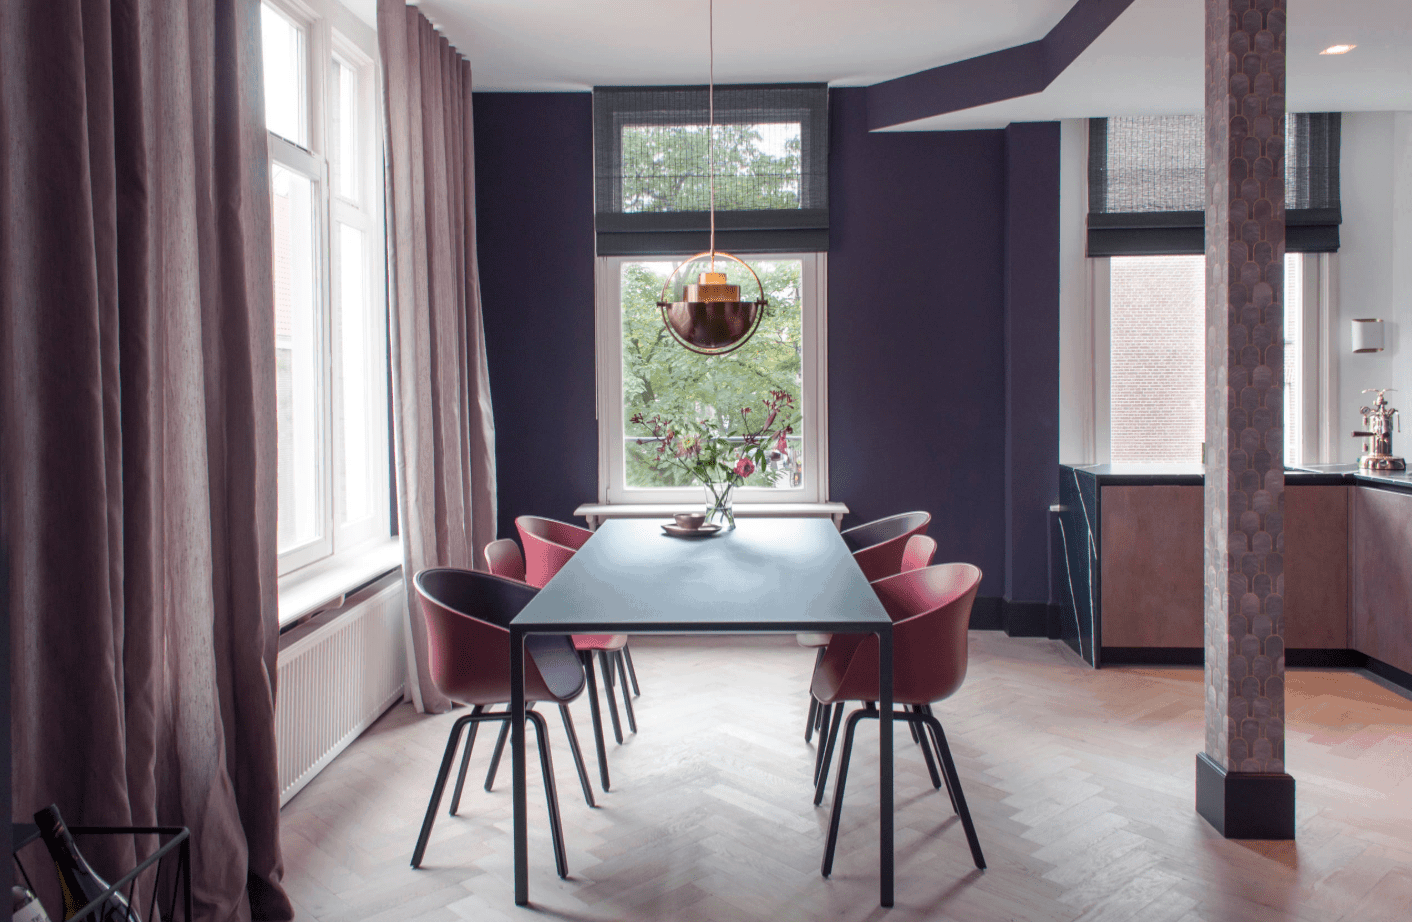 人字形地板上的长方形餐桌。这个区域被紫色的墙壁和窗帘包围着。